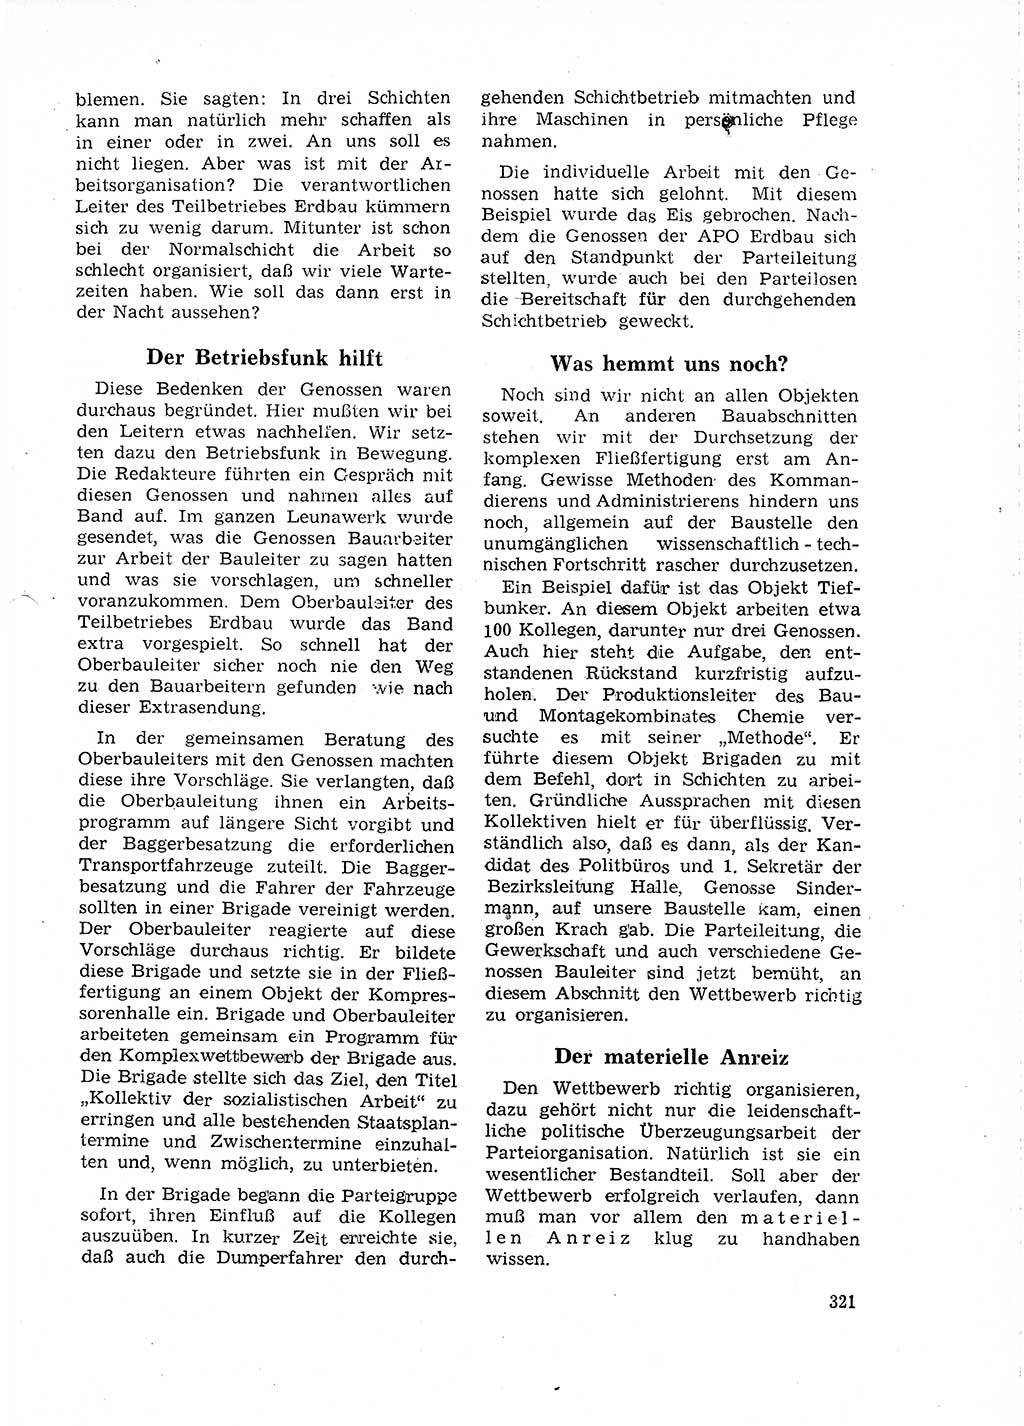 Neuer Weg (NW), Organ des Zentralkomitees (ZK) der SED (Sozialistische Einheitspartei Deutschlands) für Fragen des Parteilebens, 18. Jahrgang [Deutsche Demokratische Republik (DDR)] 1963, Seite 321 (NW ZK SED DDR 1963, S. 321)